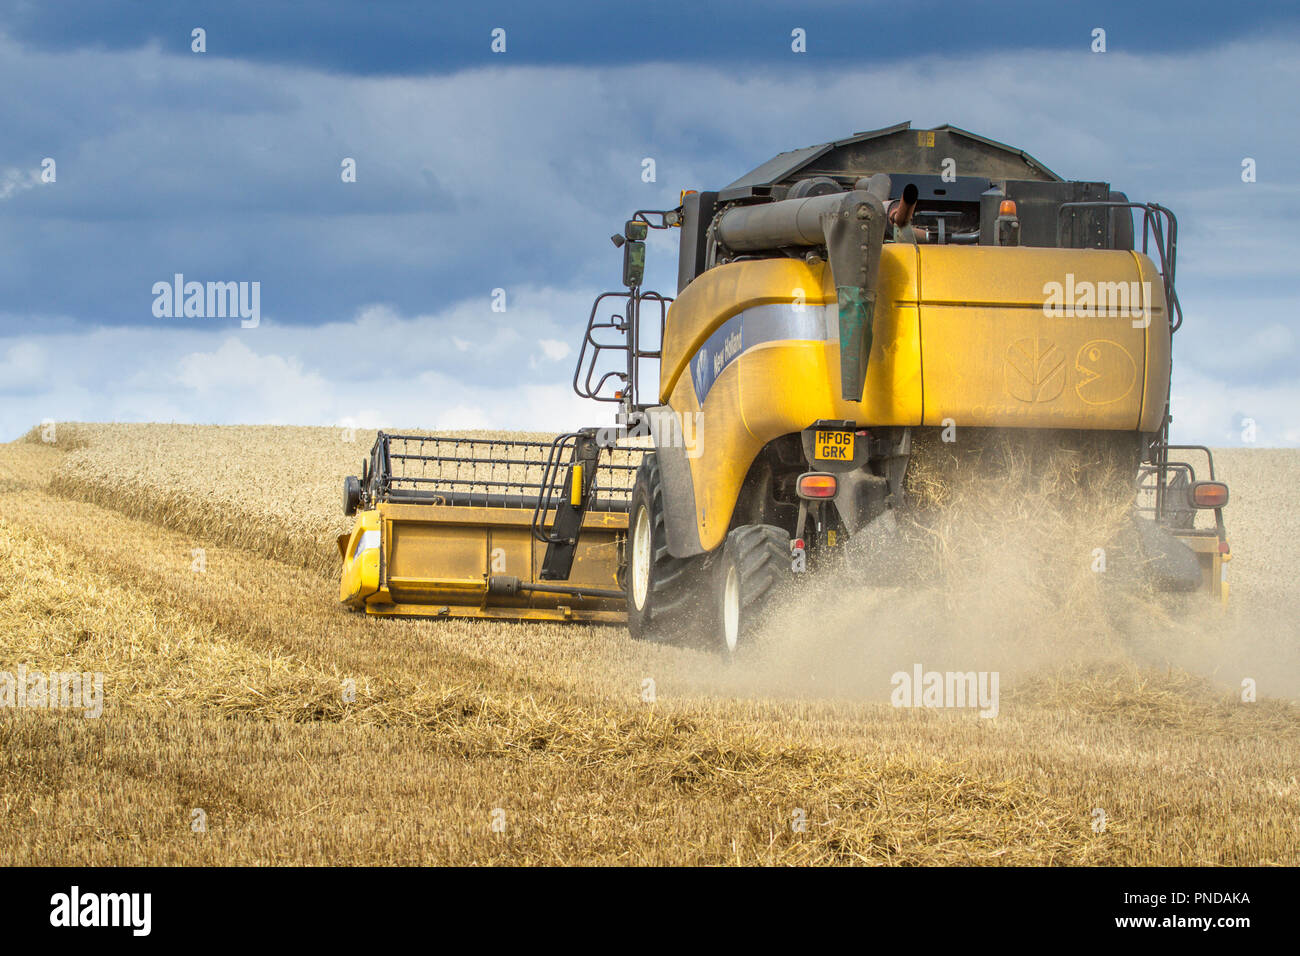 Une moissonneuse-batteuse New Holland au travail dans un champ de blé. Banque D'Images